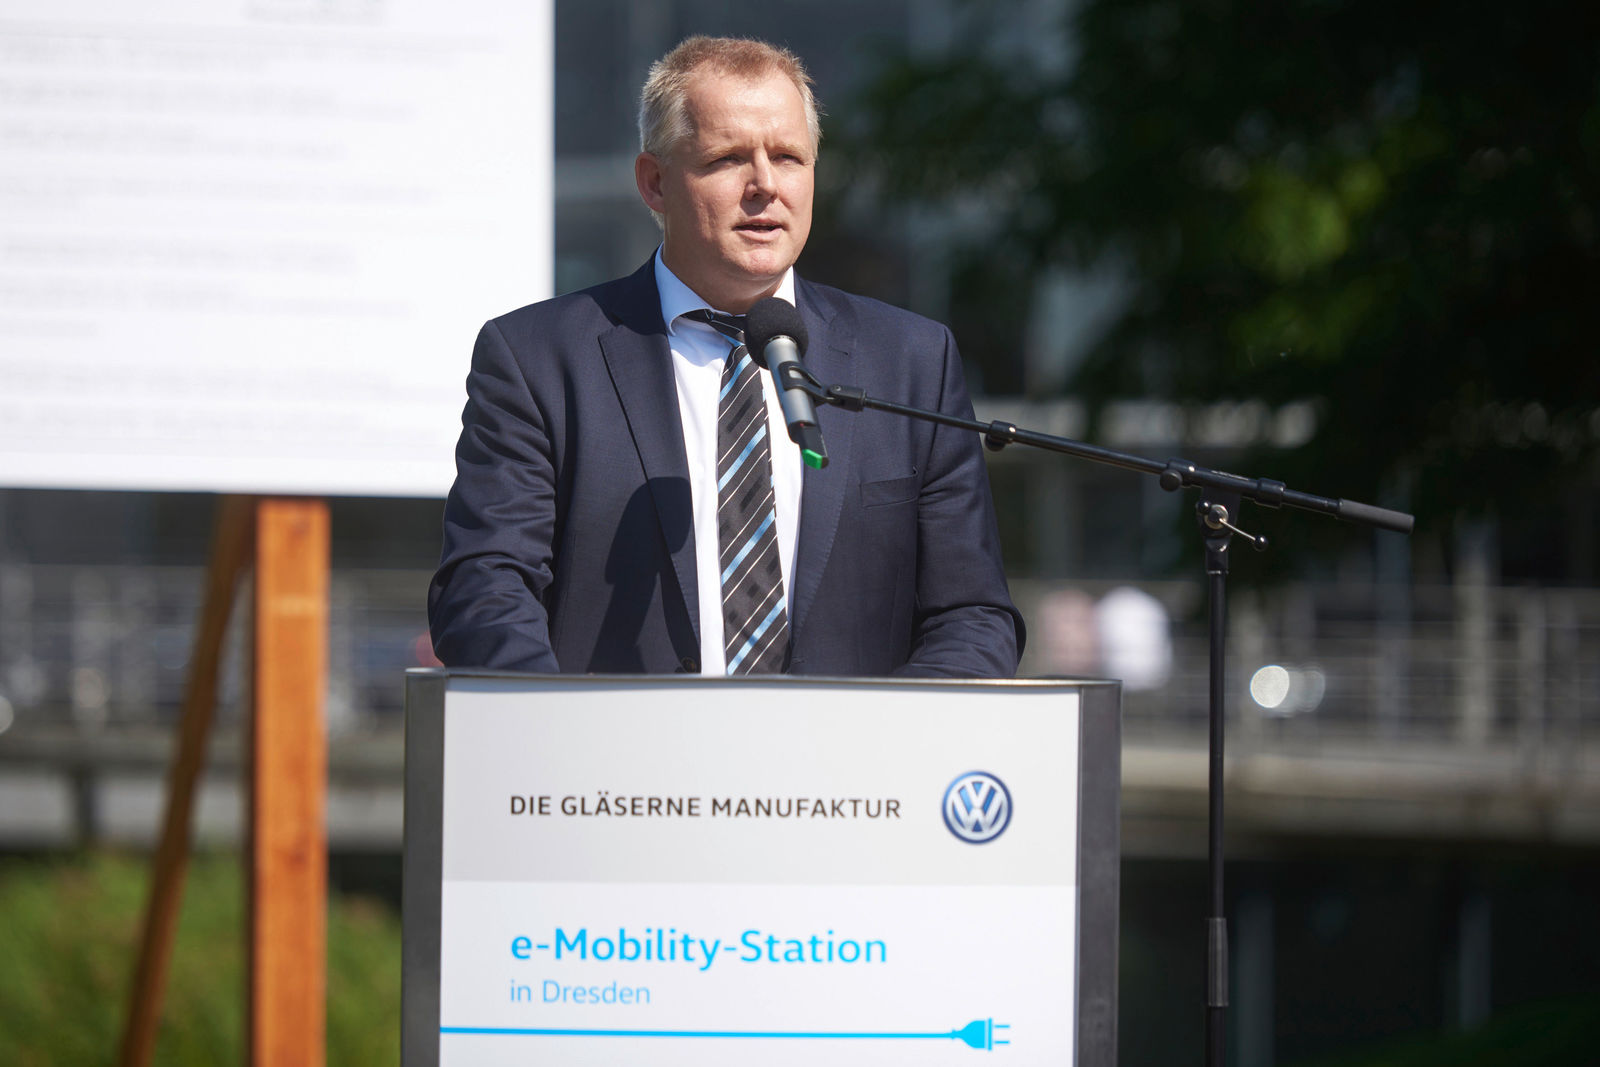 An der Gläsernen Manufaktur: Spatenstich zum Bau der größten e-Mobility-Station in Dresden